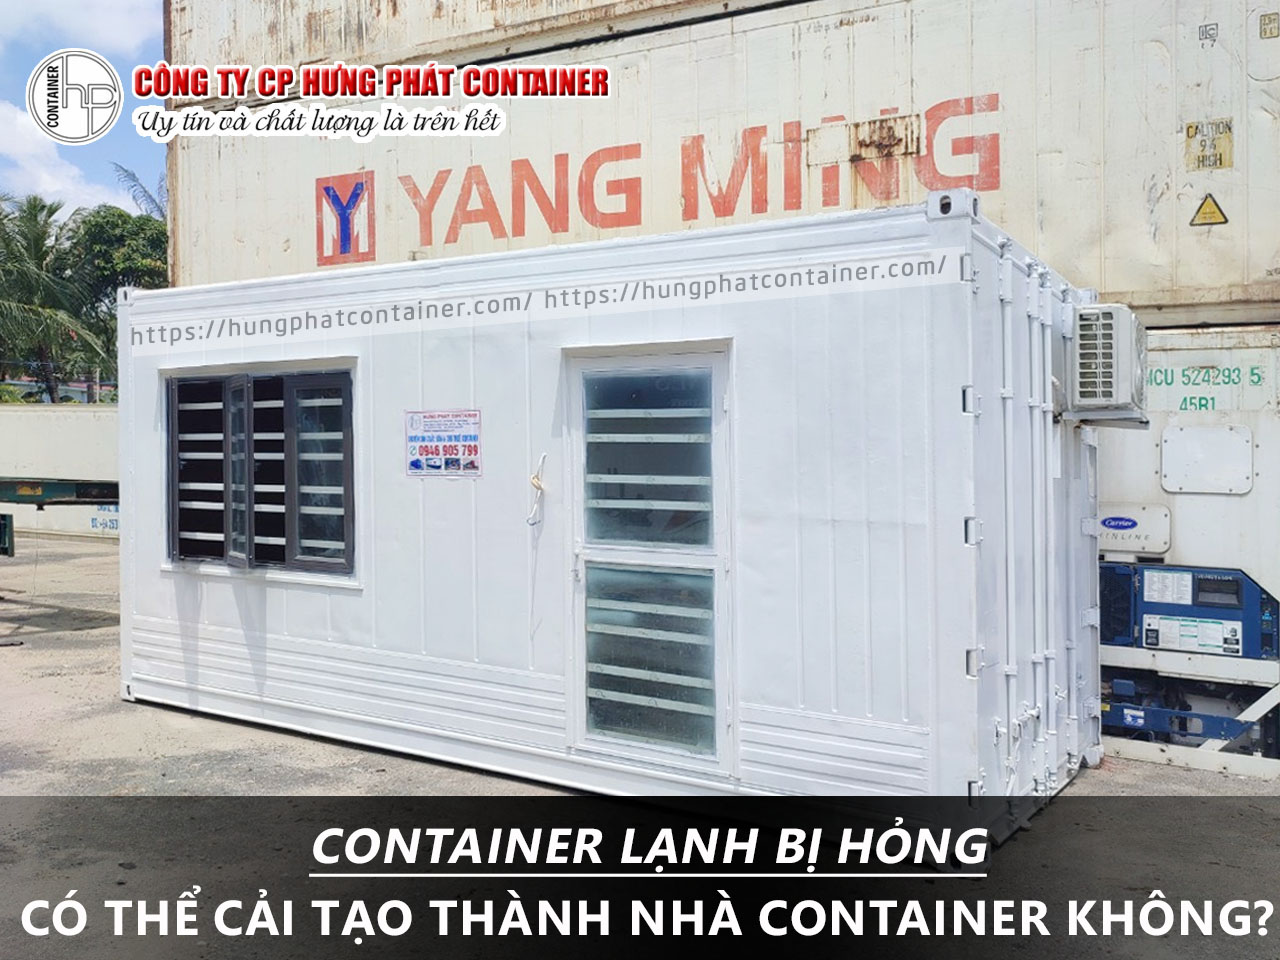 Container lạnh bị hỏng có thể cải tạo thành nhà container không?